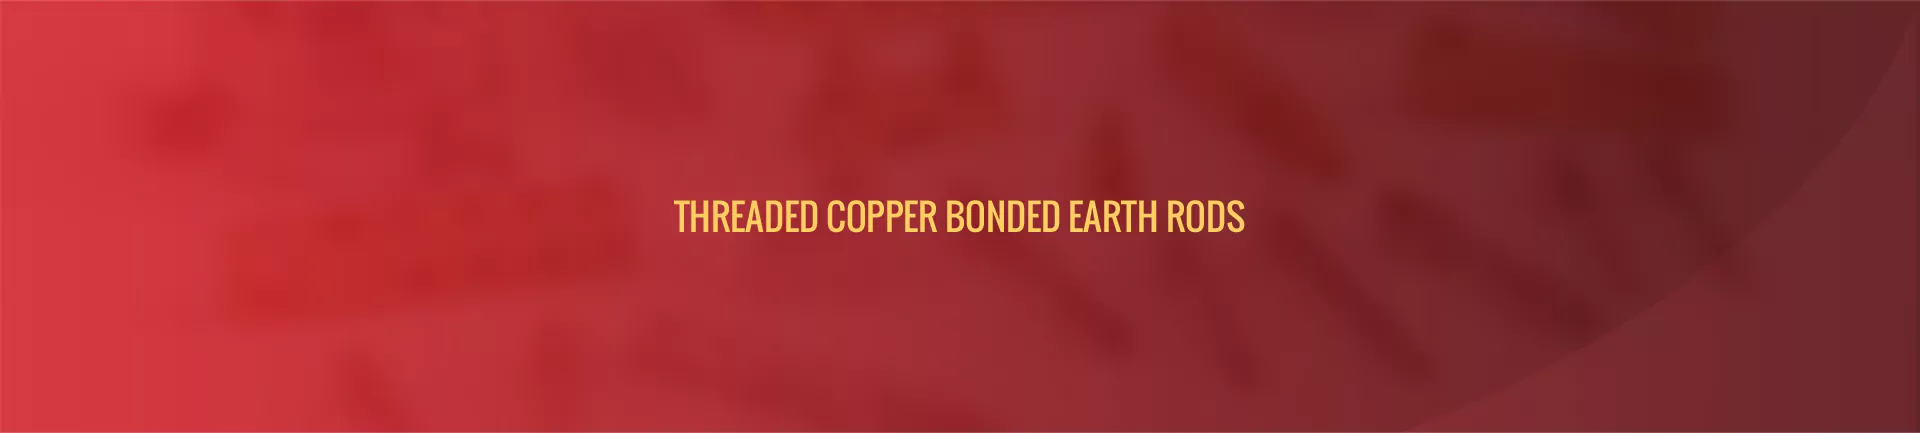 threaded-copper-bonded-eart-rods-banner